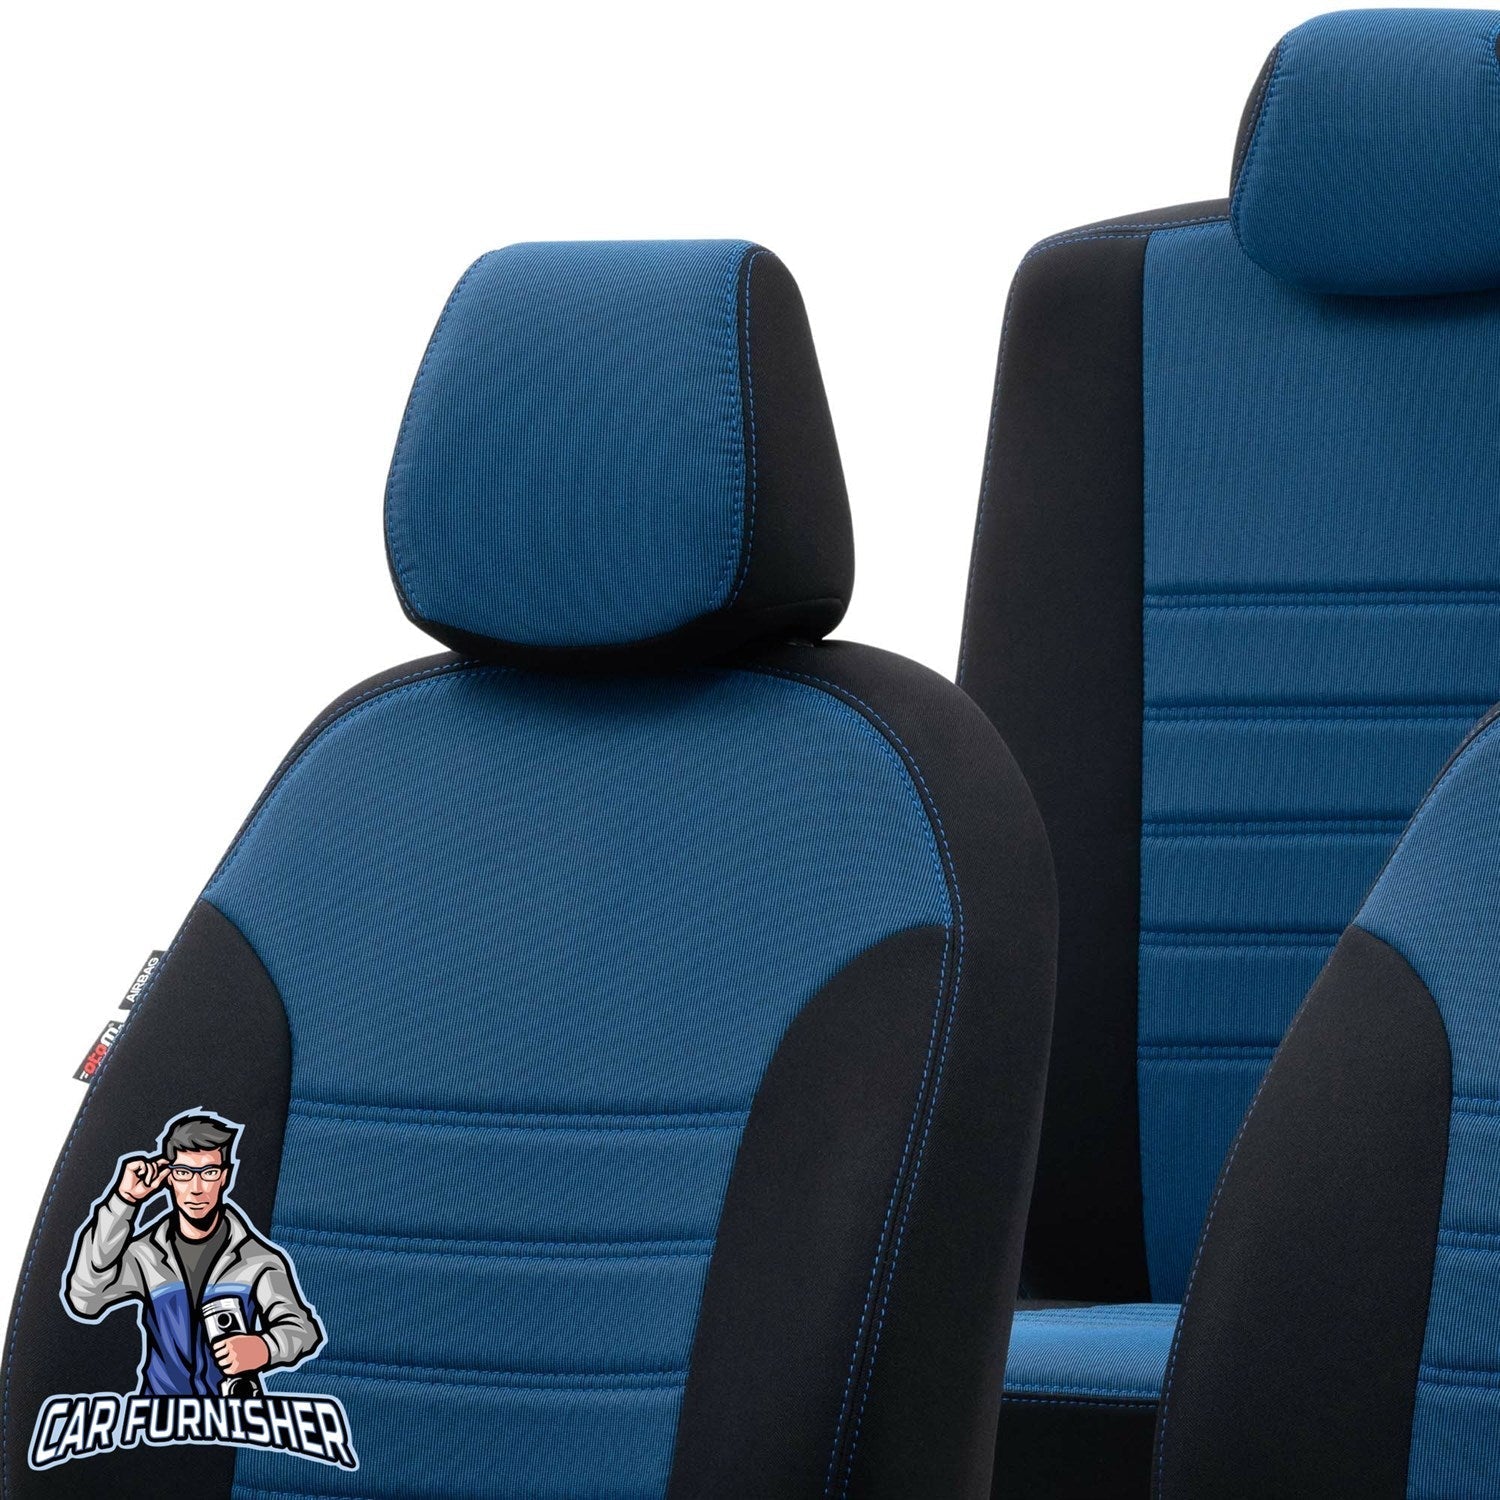 Volvo S90 Seat Cover Original Jacquard Design Dark Beige Jacquard Fabric